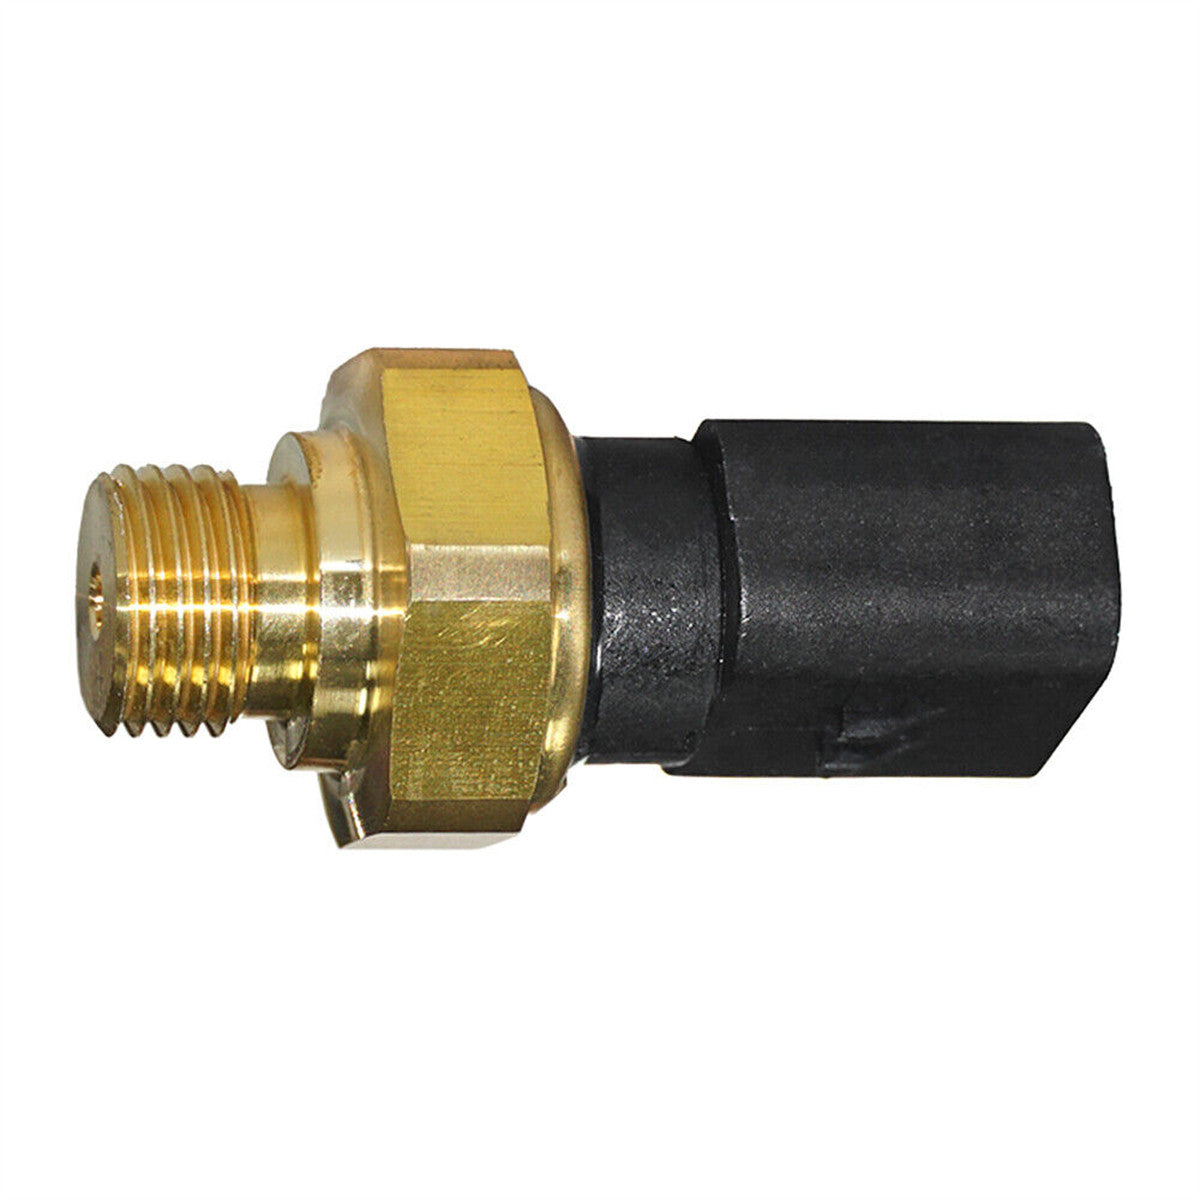 274-6717 2746717 Oil Pressure Sensor for Caterpillar 345C 345CL Excavator - Sinocmp